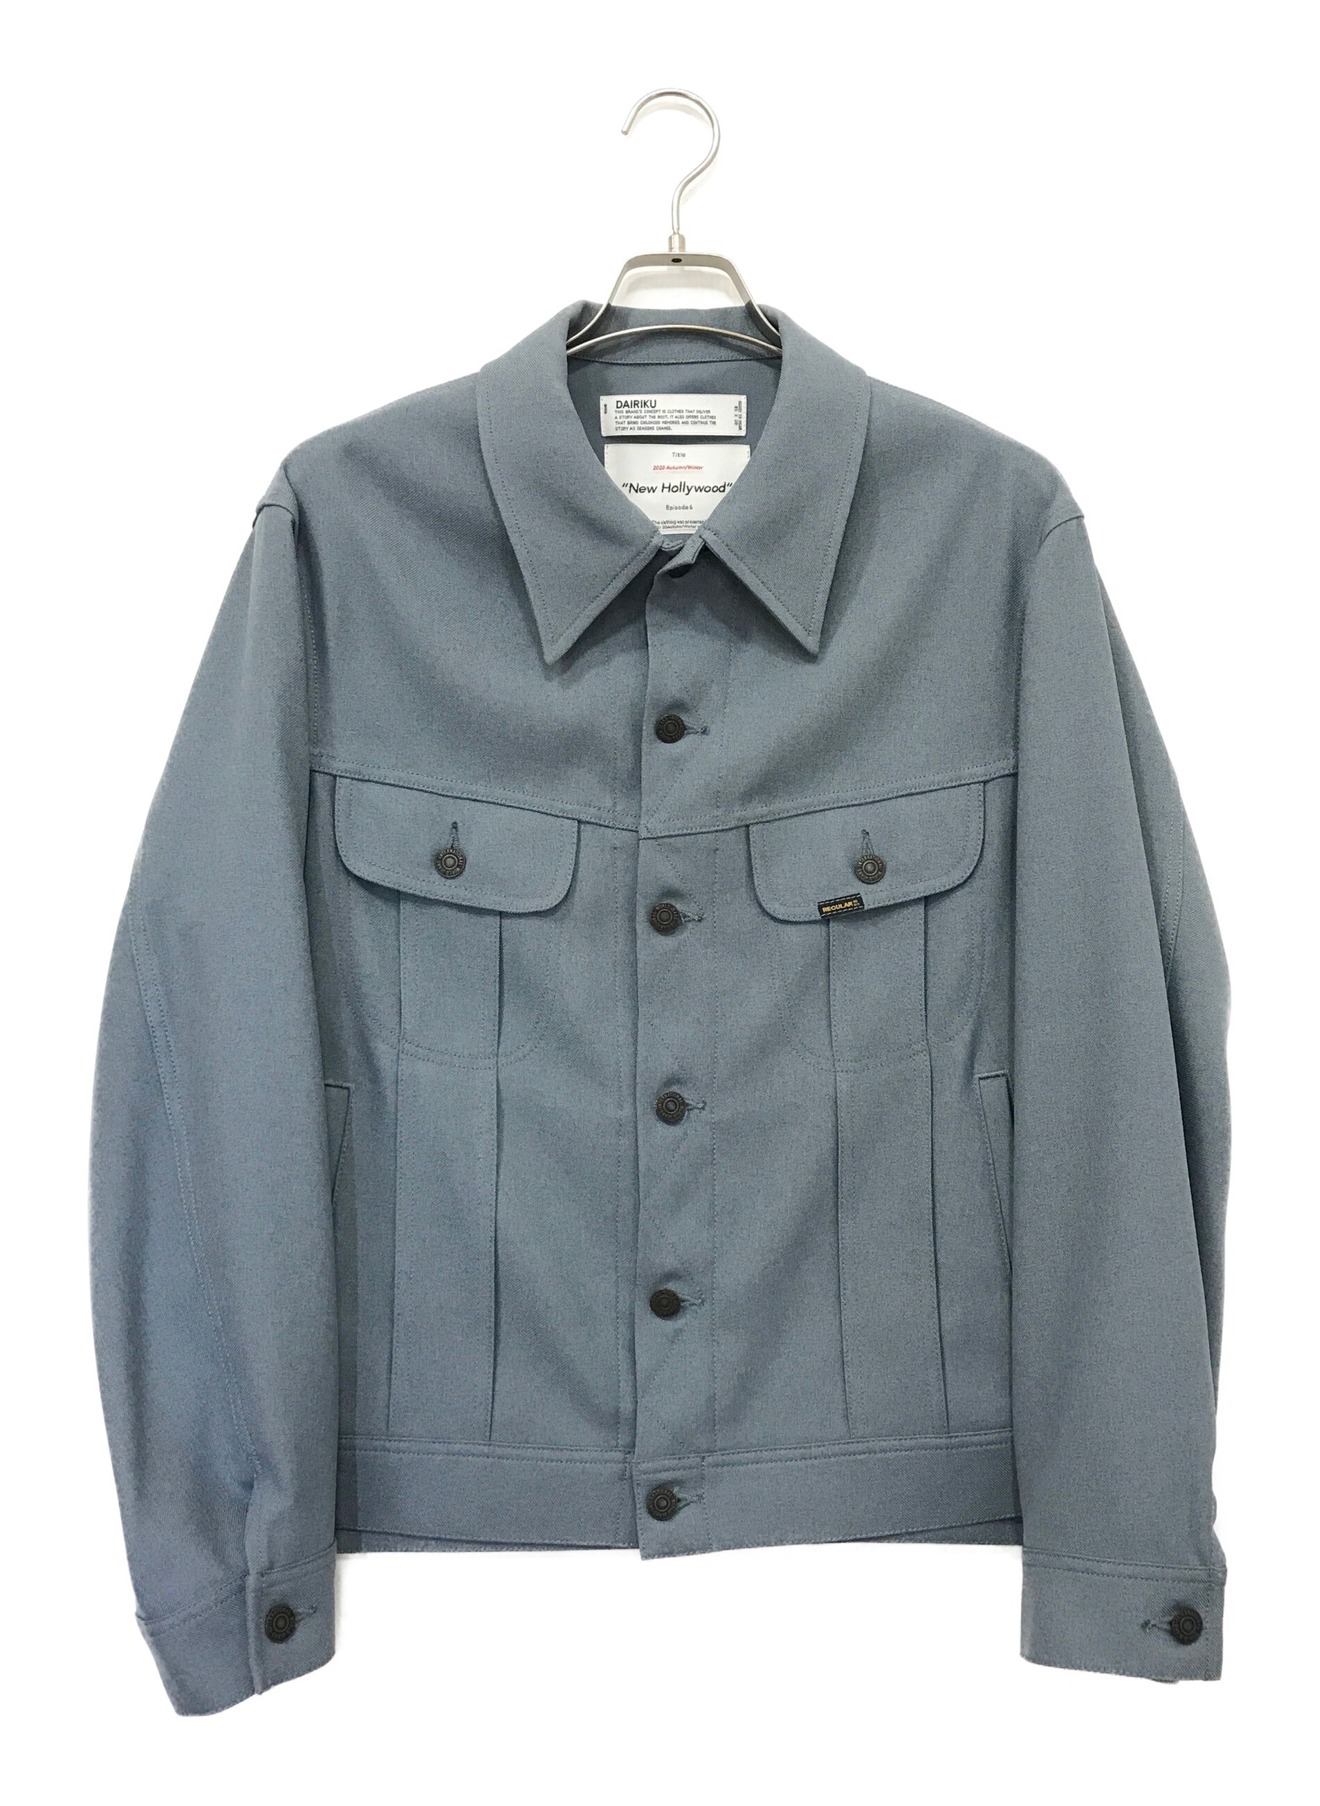 DAIRIKU Regular polyester jacket素材ポリエステル100%